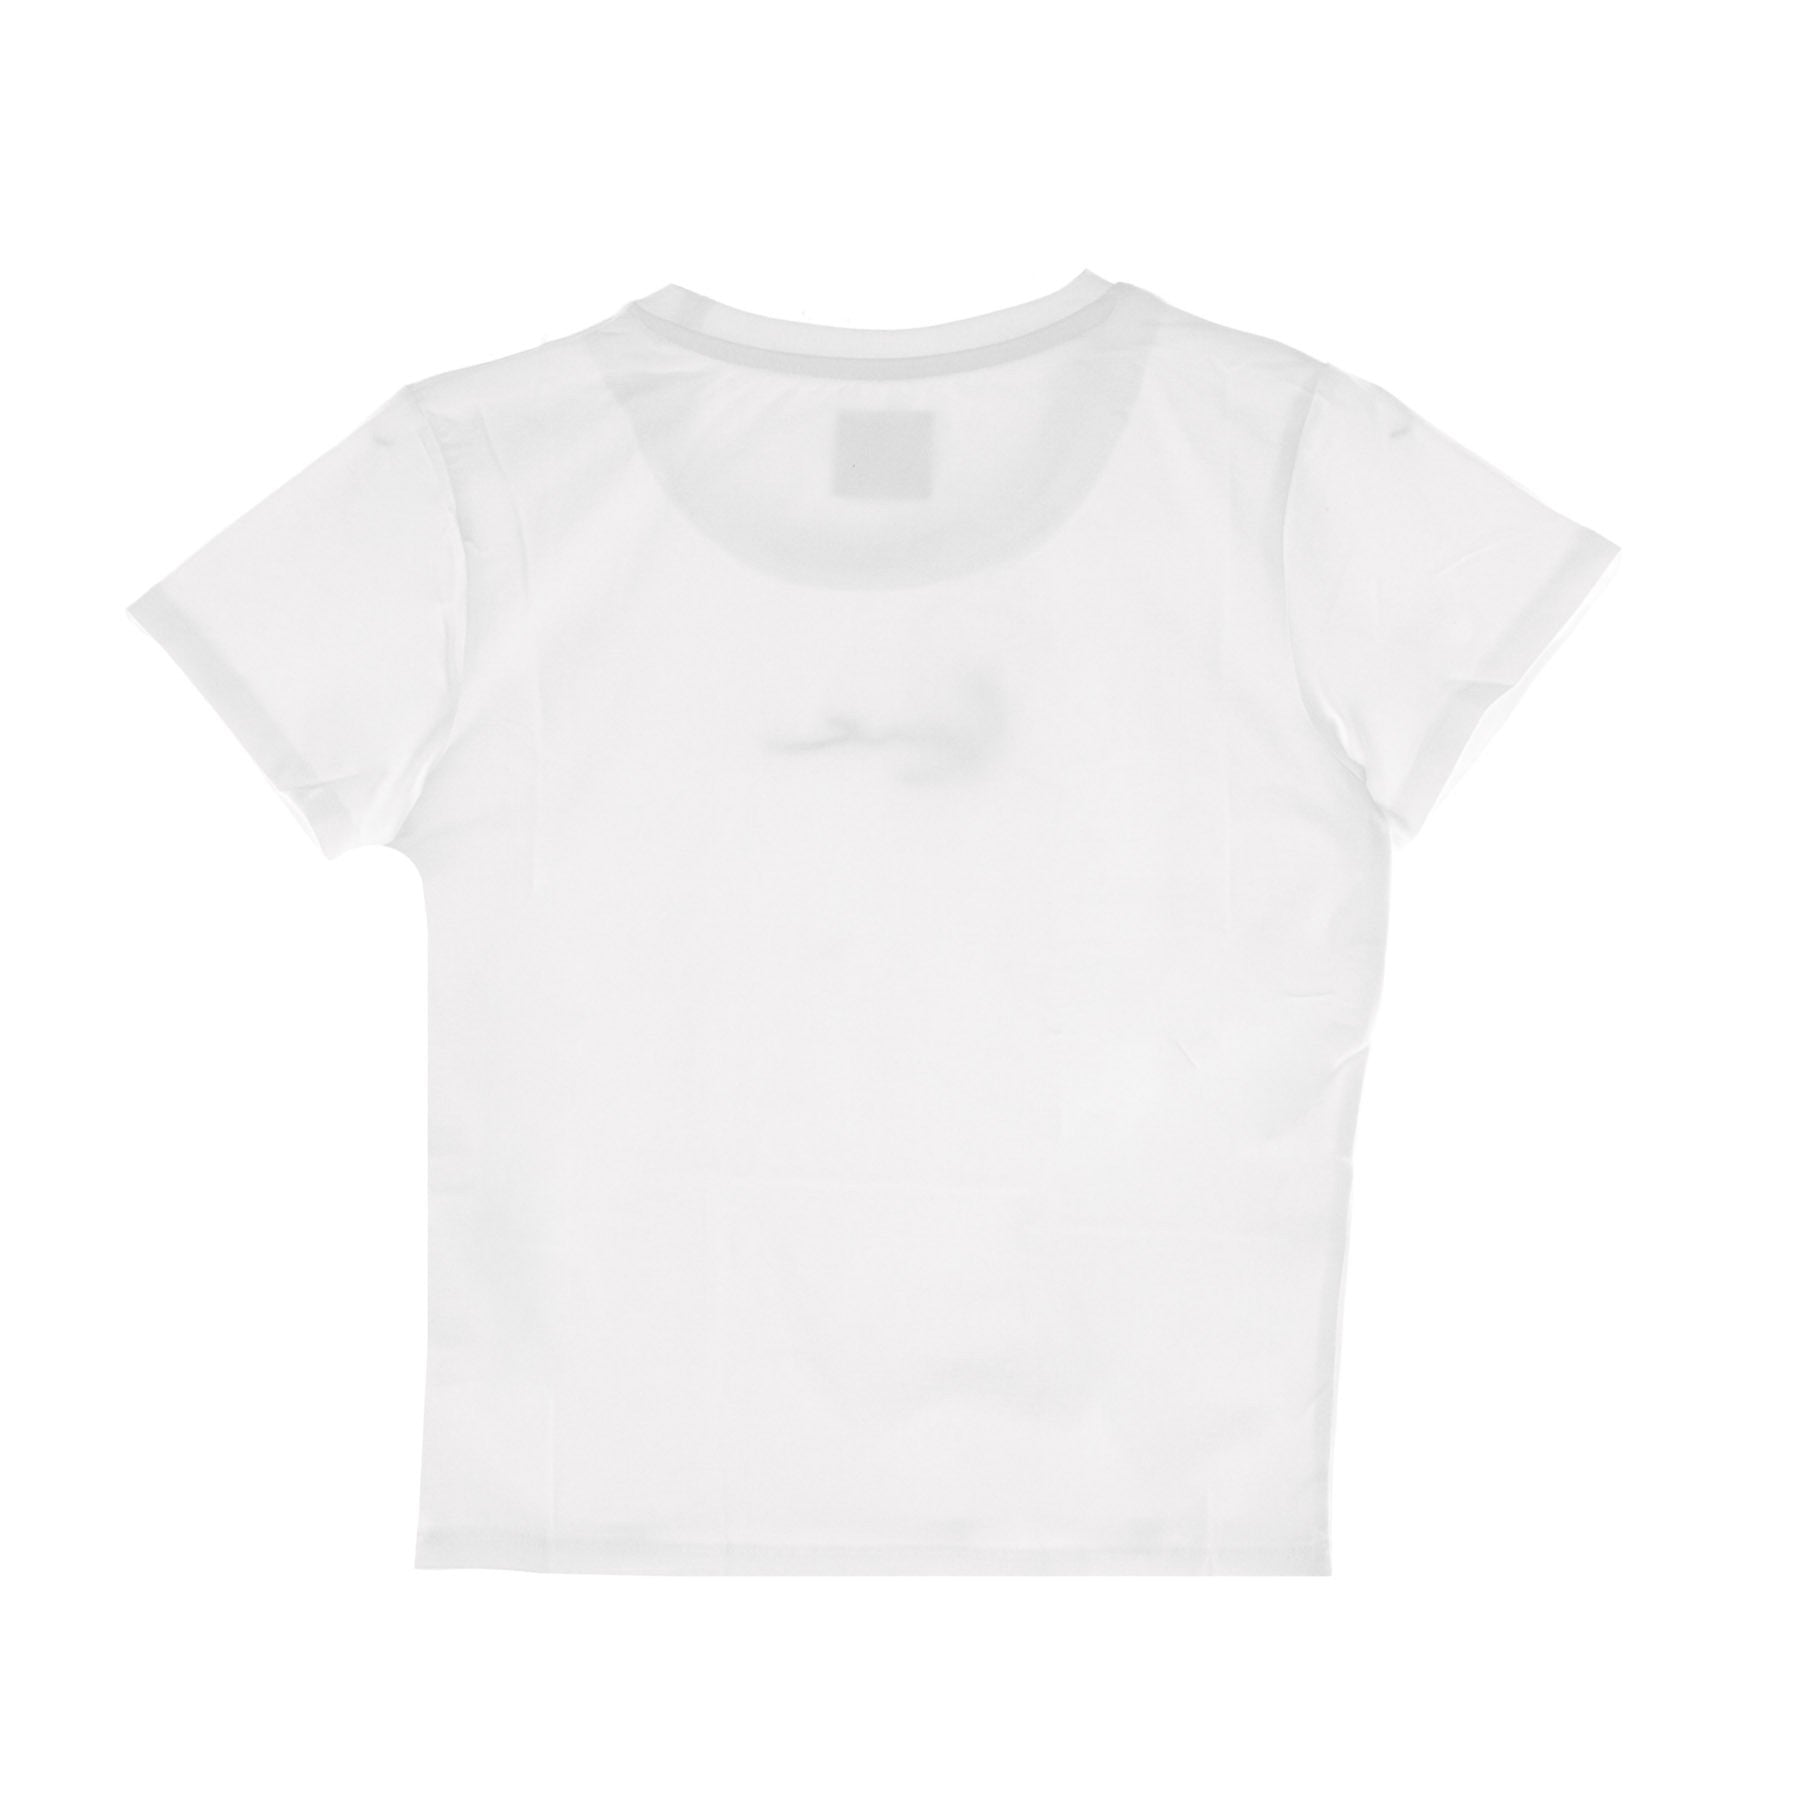 Women's Signature Short Tee White T-Shirt